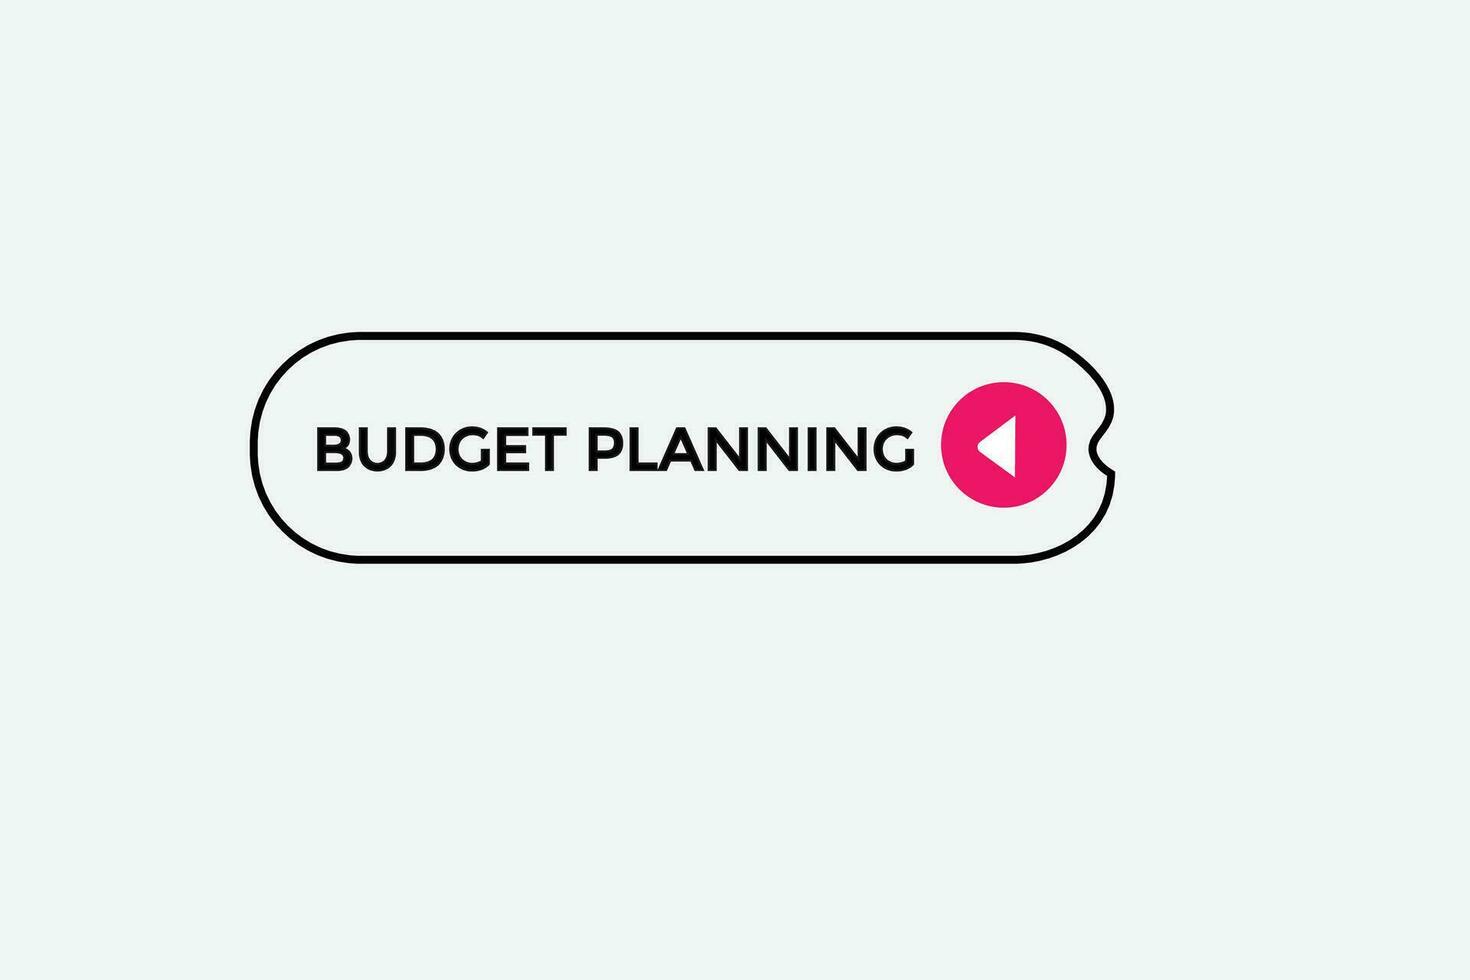 Nouveau budget Planification moderne, site Internet, Cliquez sur bouton, niveau, signe, discours, bulle bannière, vecteur